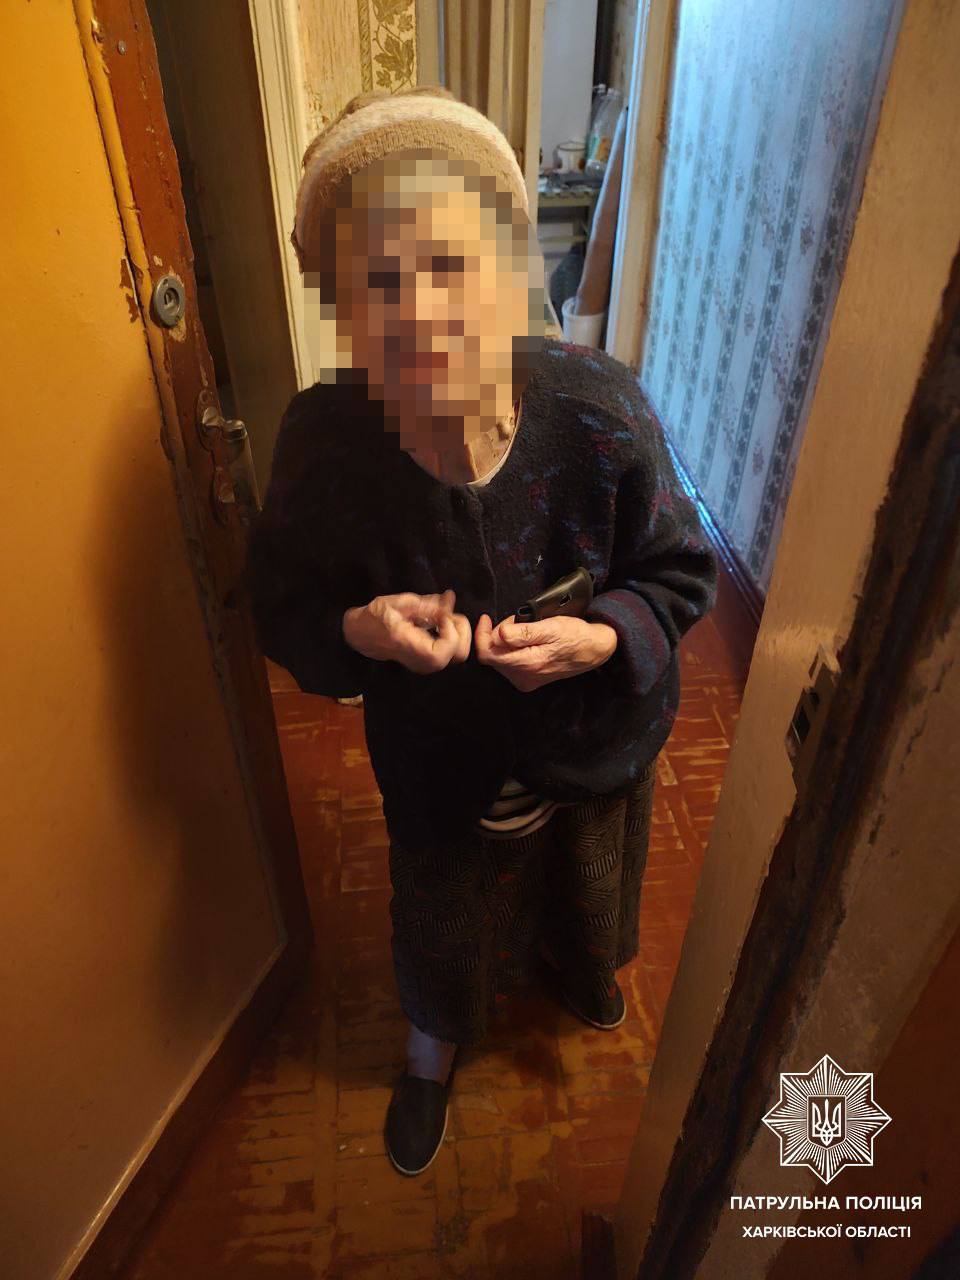 Бабуся була замкнена у квартирі у Харкові